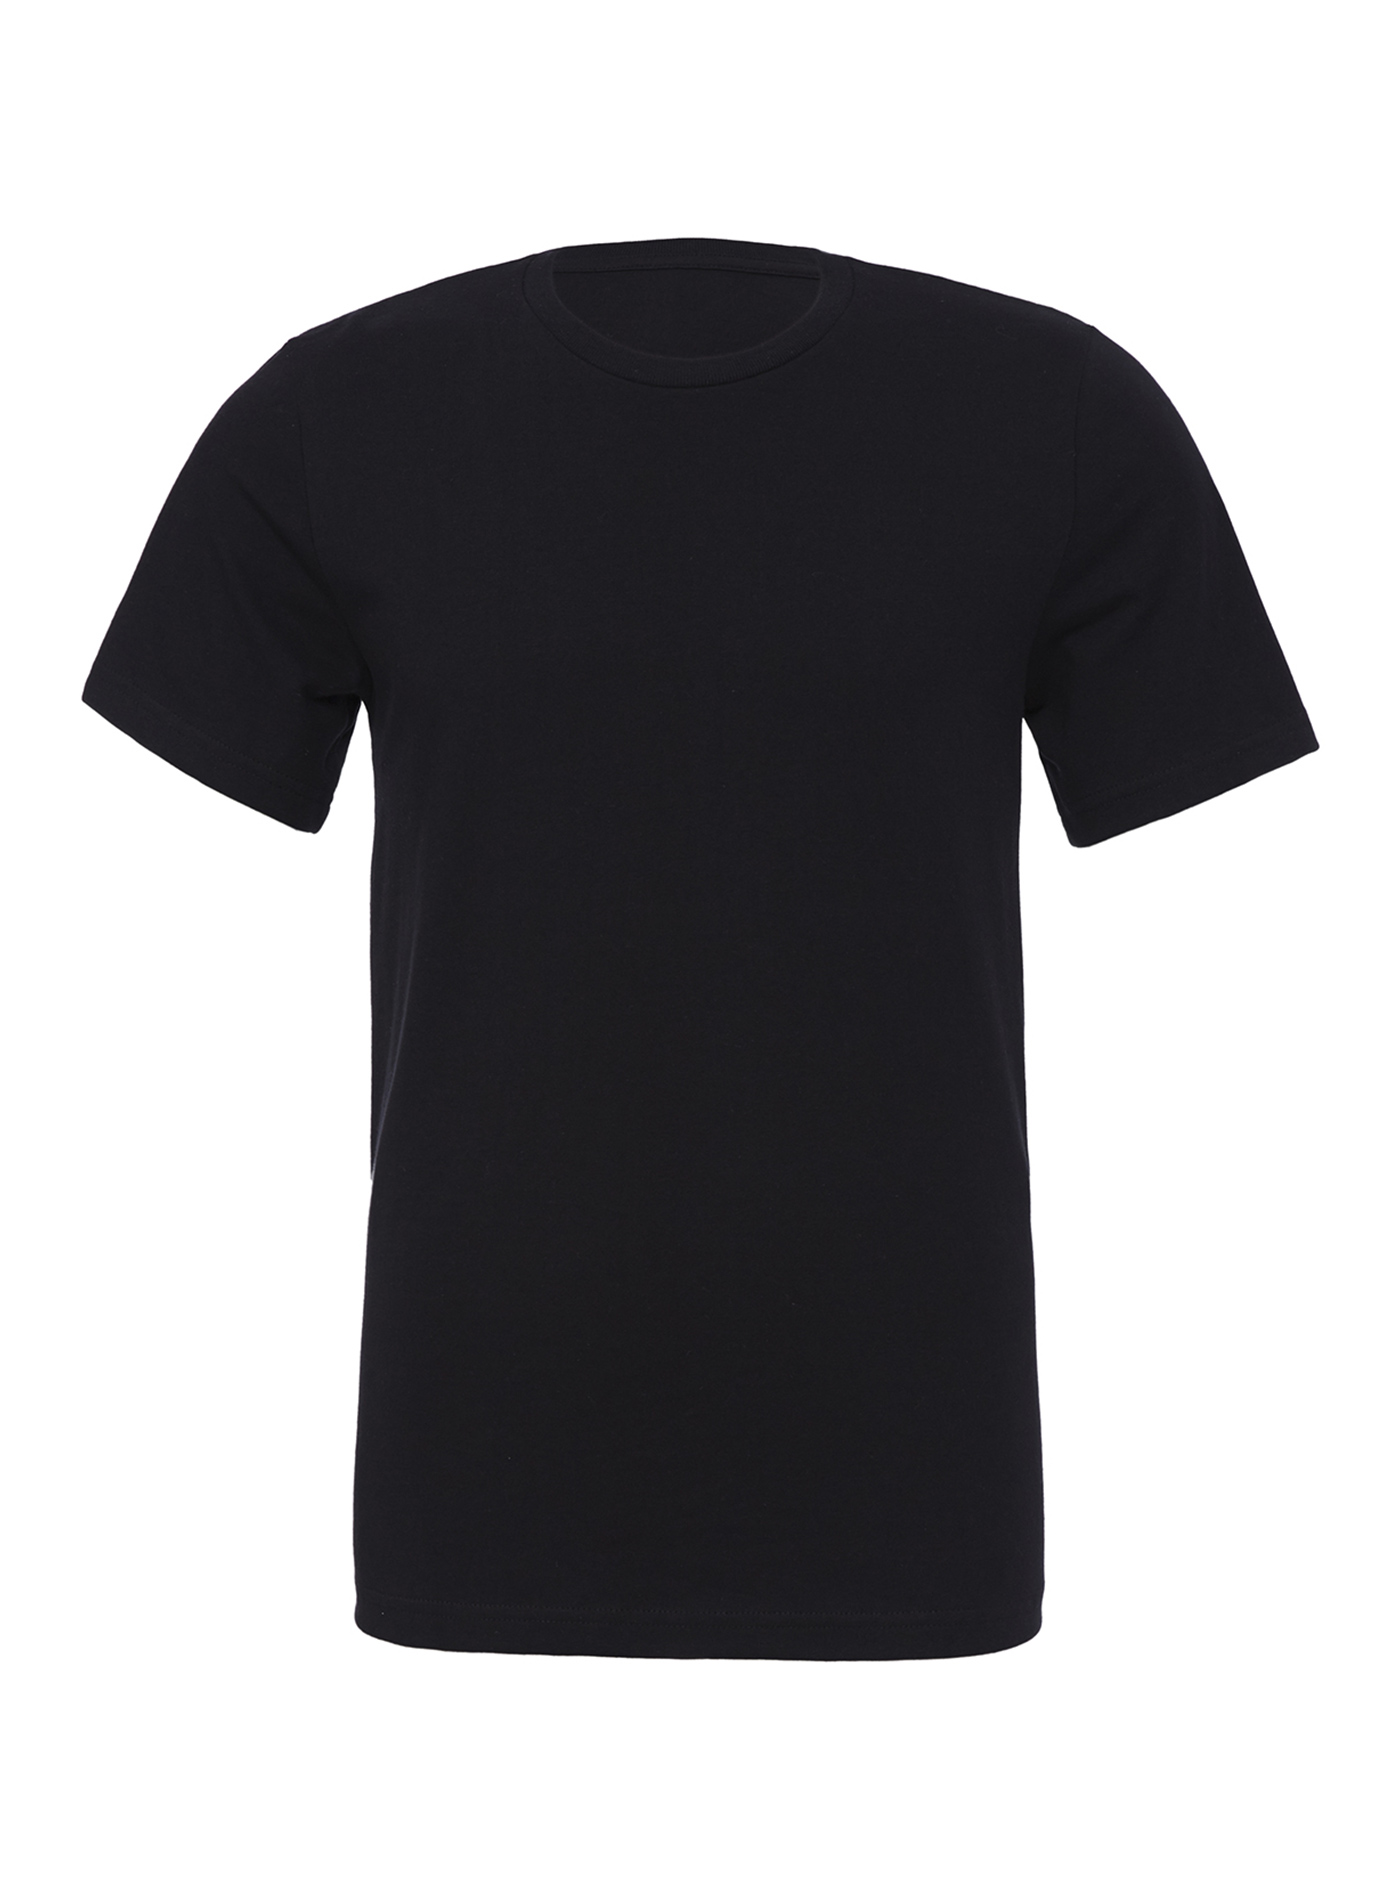 Unisex tričko Bella + Canvas Jersey - černá XL